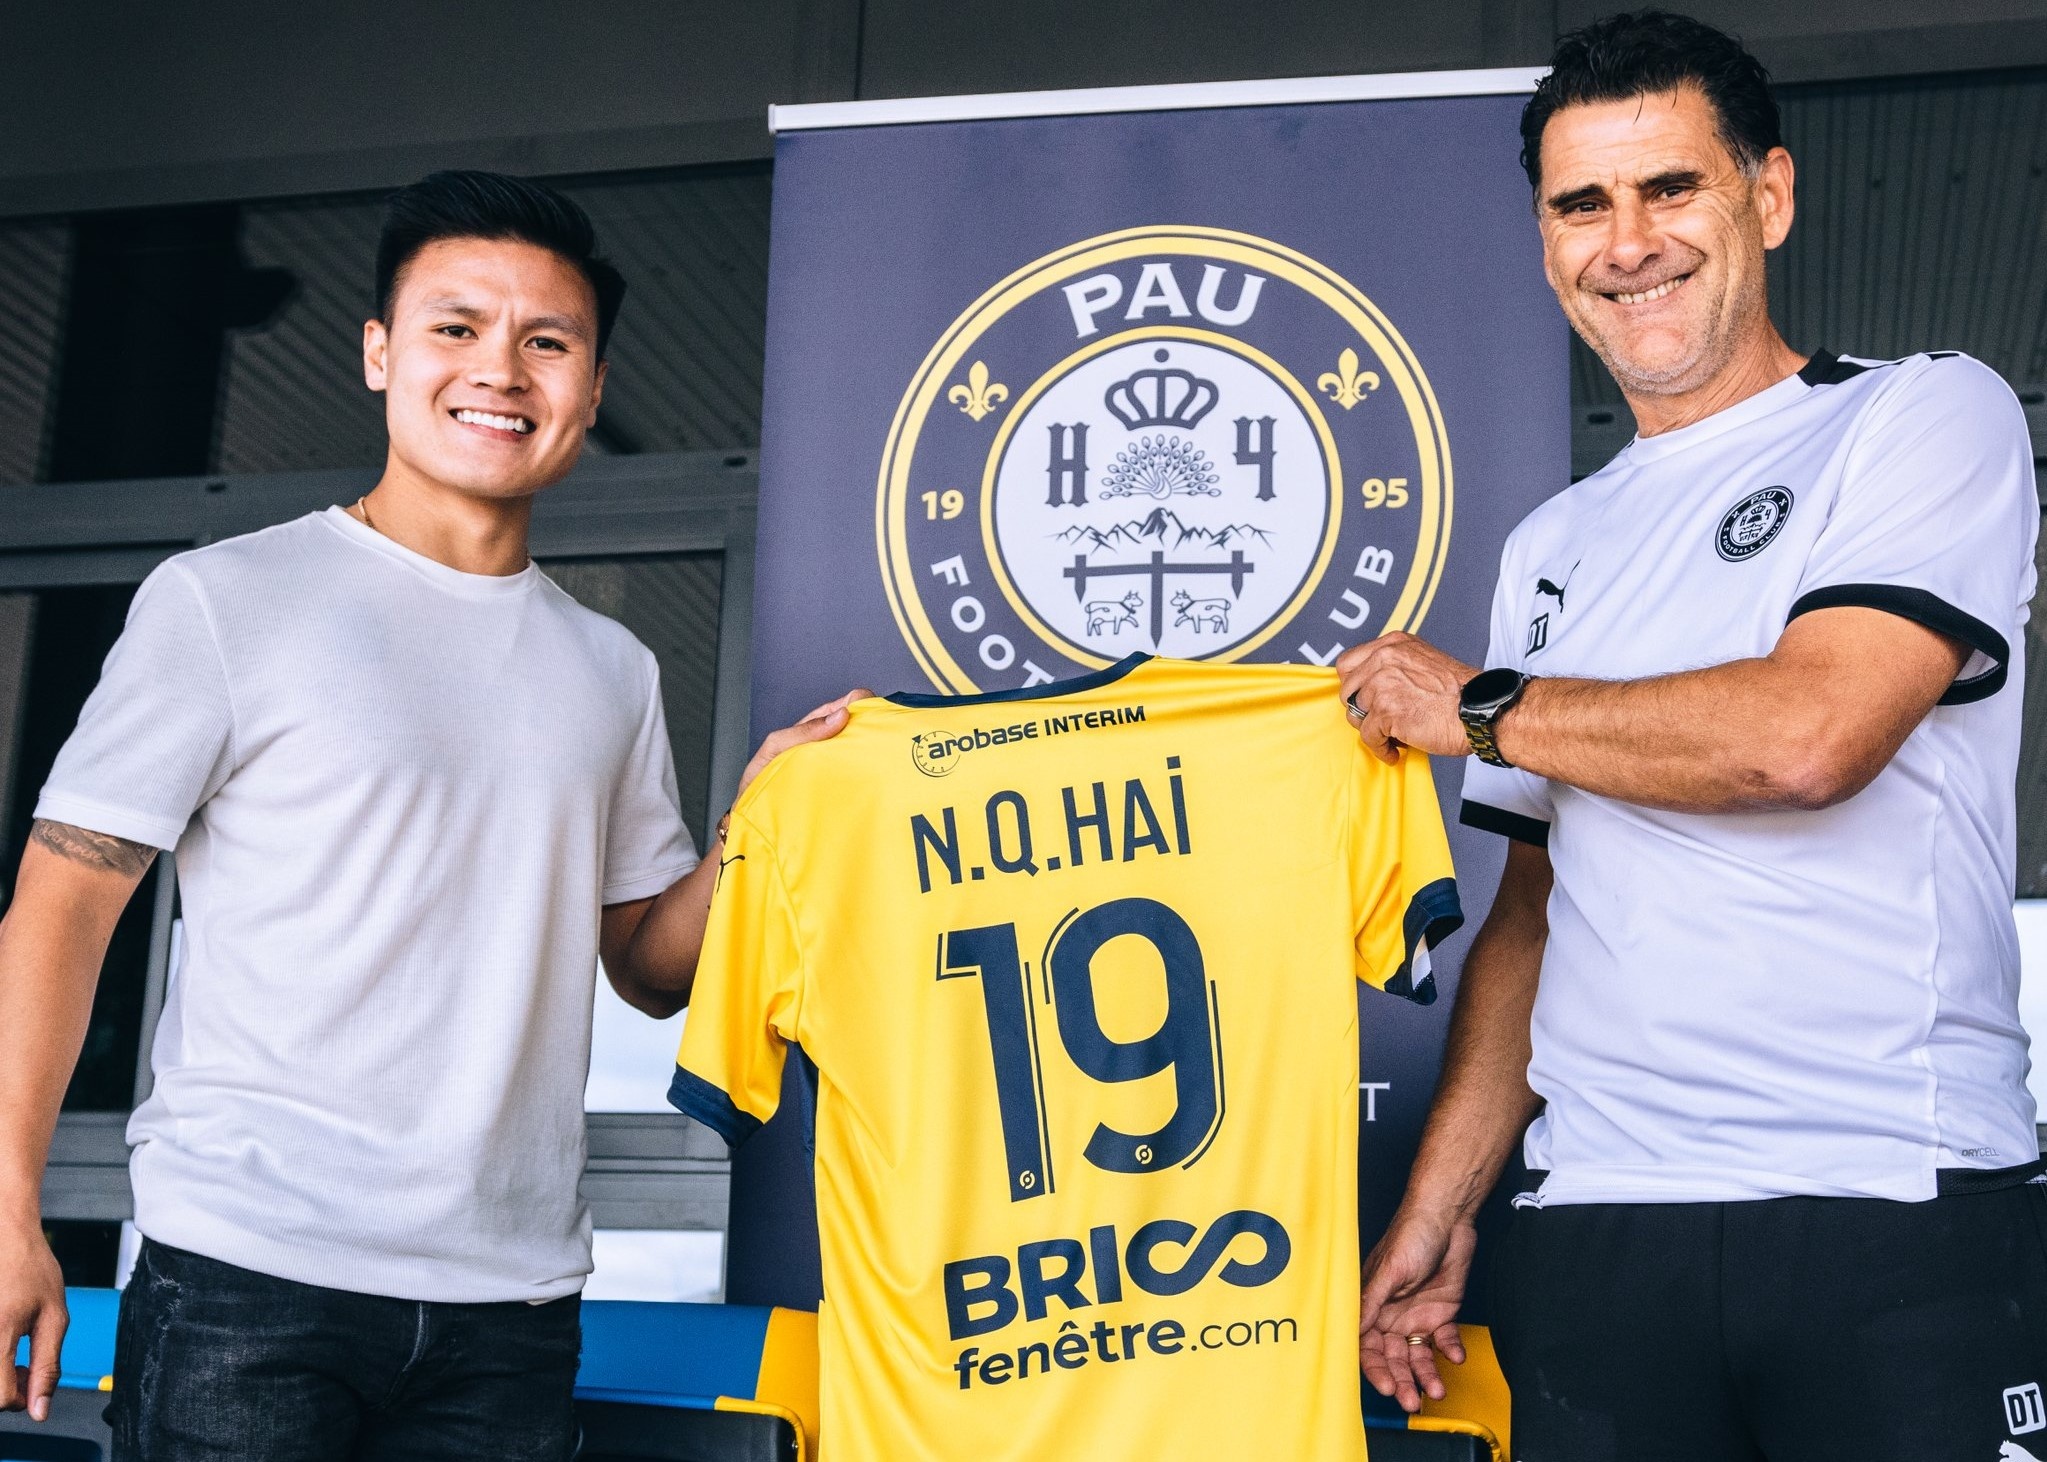 Vì sao Quang Hải chỉ ký hợp đồng 2 năm với Pau FC? - ảnh 1